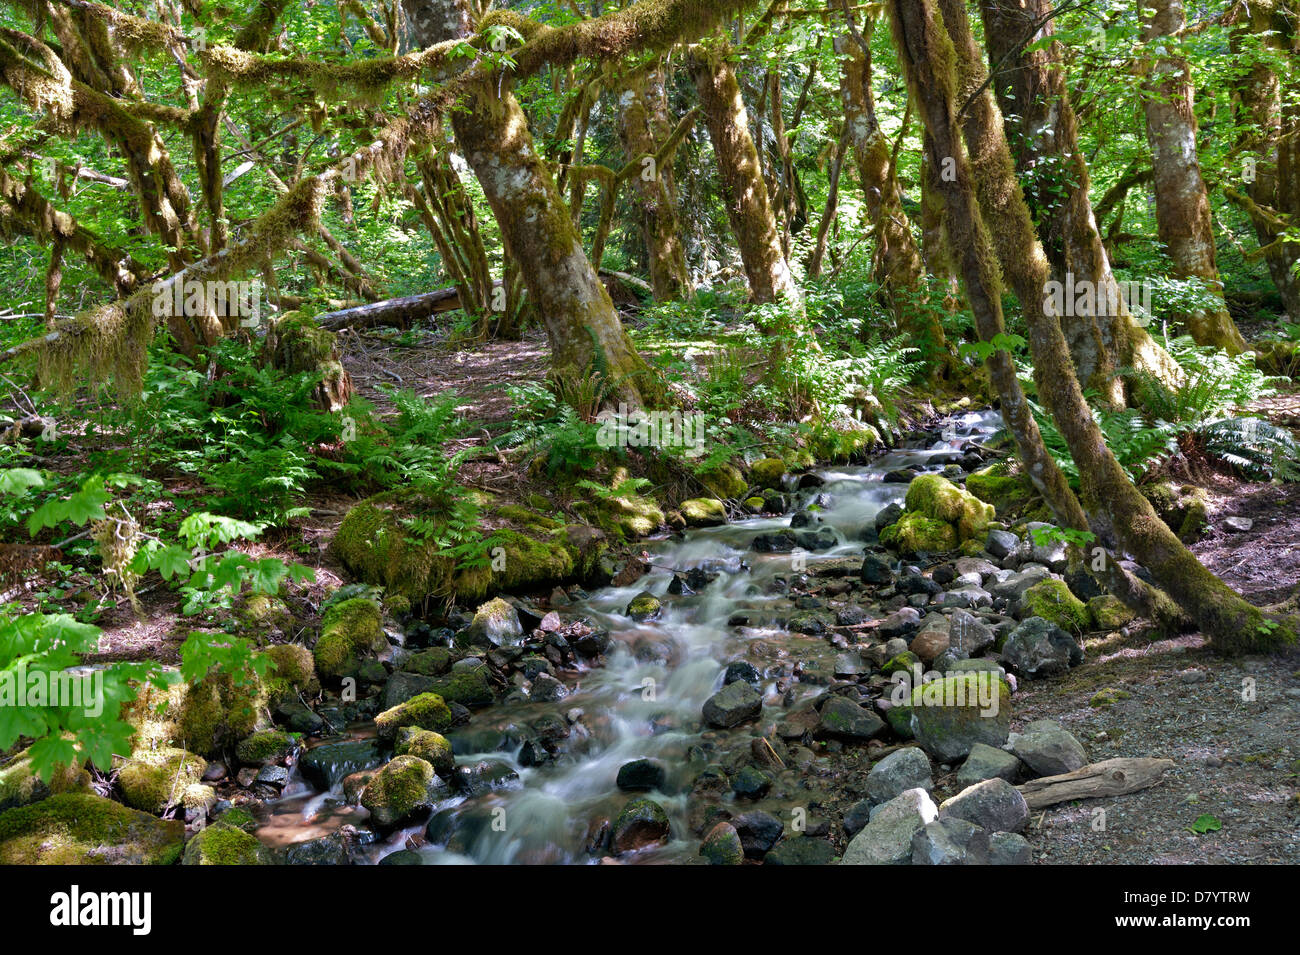 Regen-Urwald mit mossed Boden, Steinen und einem Bach Stockfoto